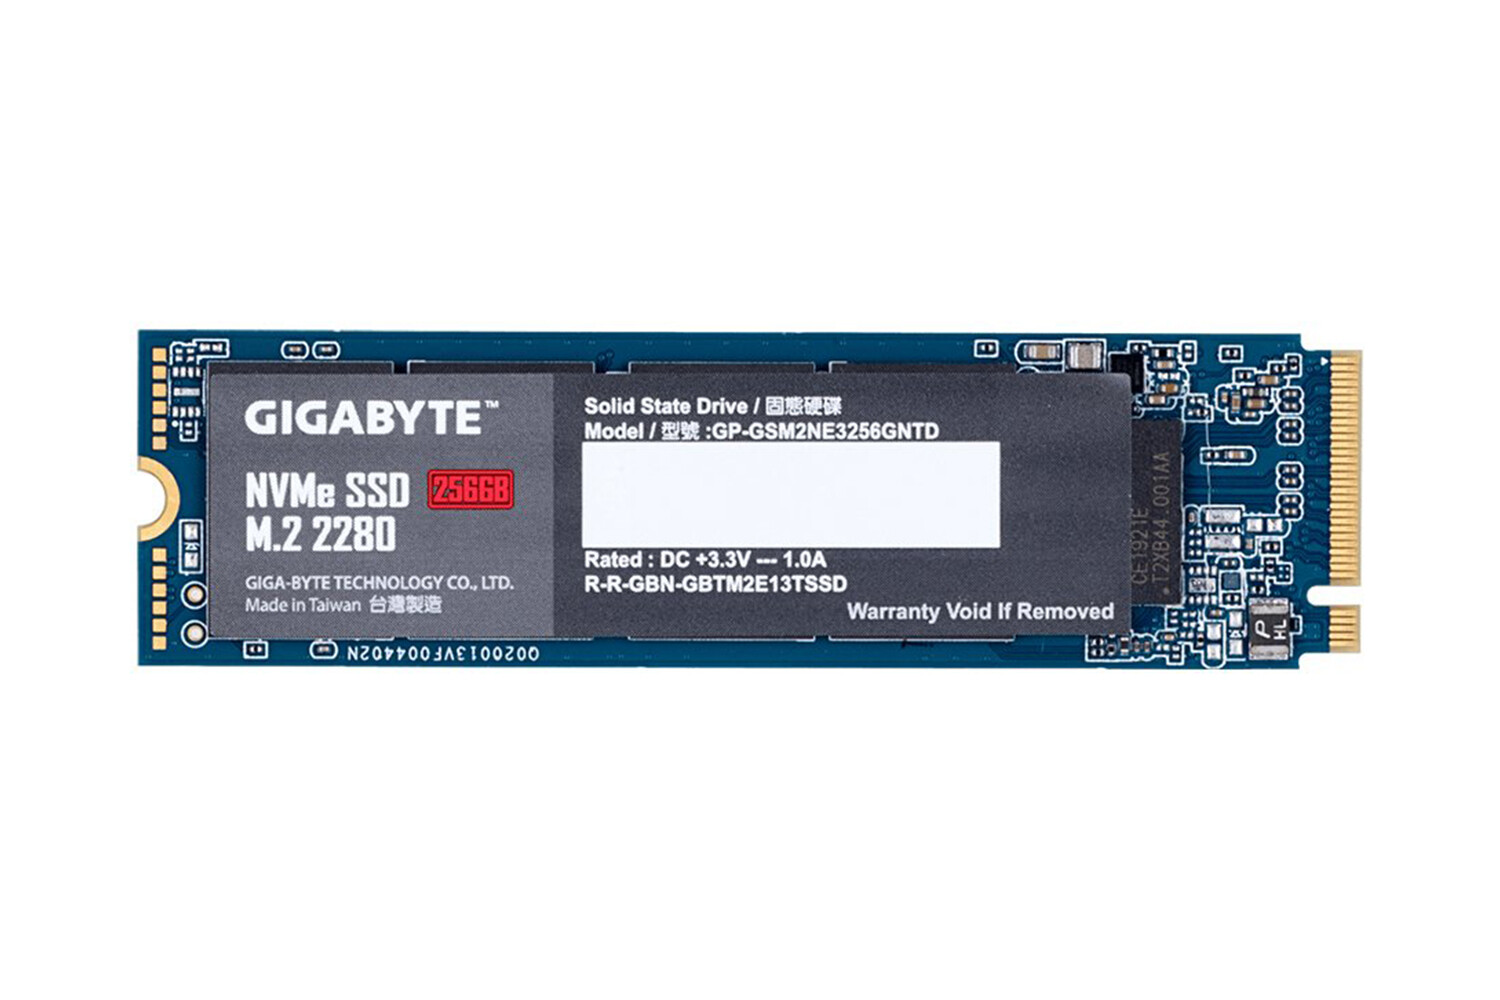 GIGABYTE SSD 256GB, M.2 2280, NVMe 1.3 PCI-Express 3.0 x4, 3D NAND TLC, 1700MBs/1100MBs, 5Yr., Retail